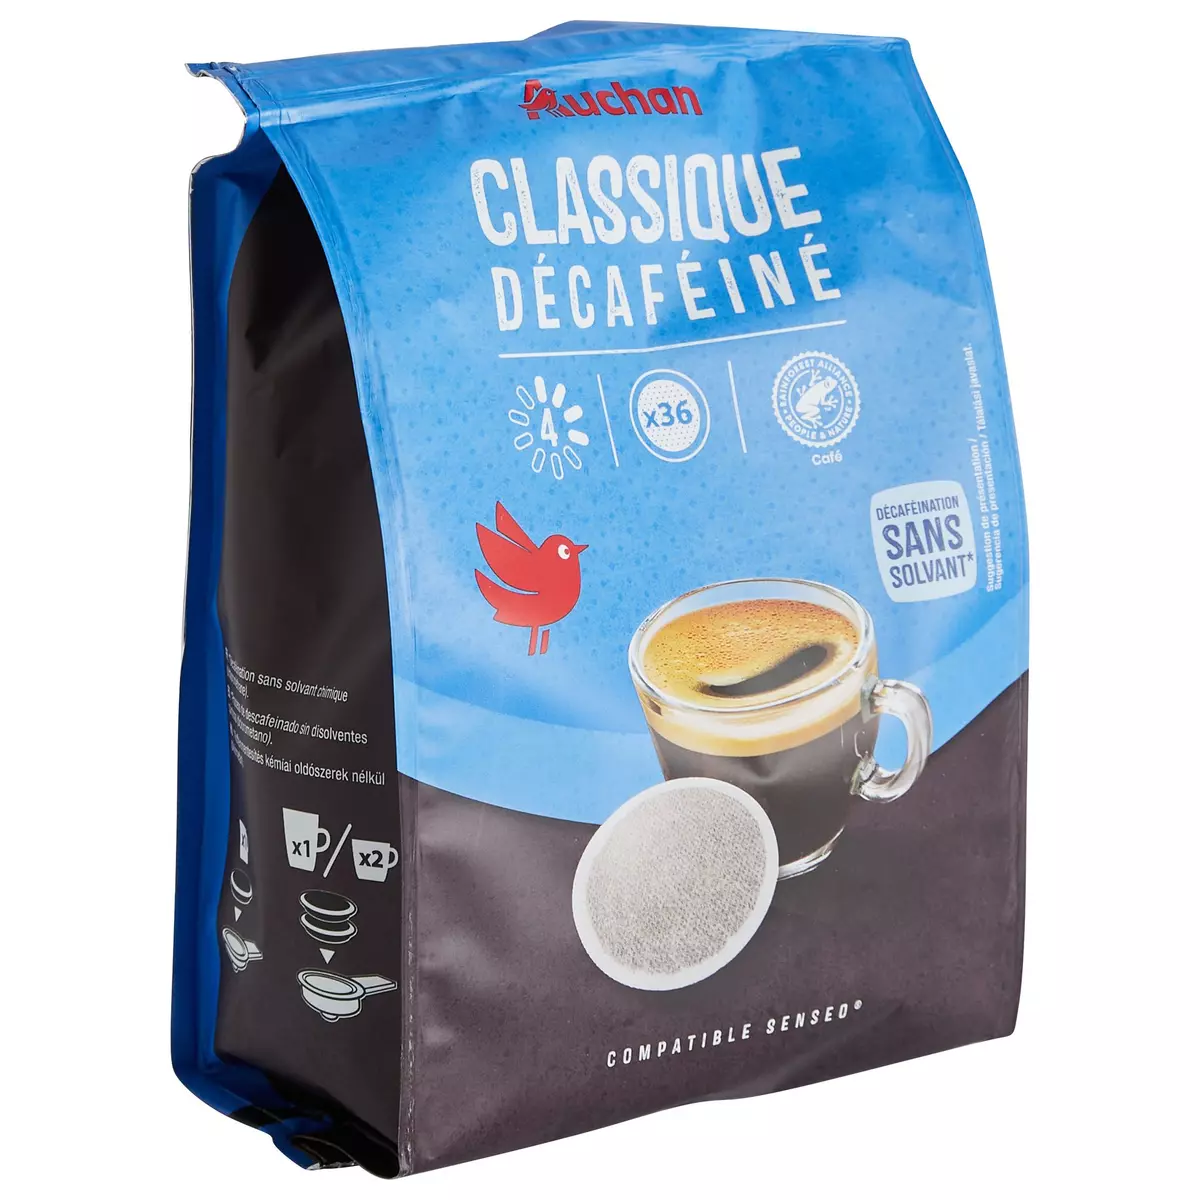 AUCHAN Dosettes de café classico décaféiné intensité 4 compatibles Senseo 36 dosettes 250g